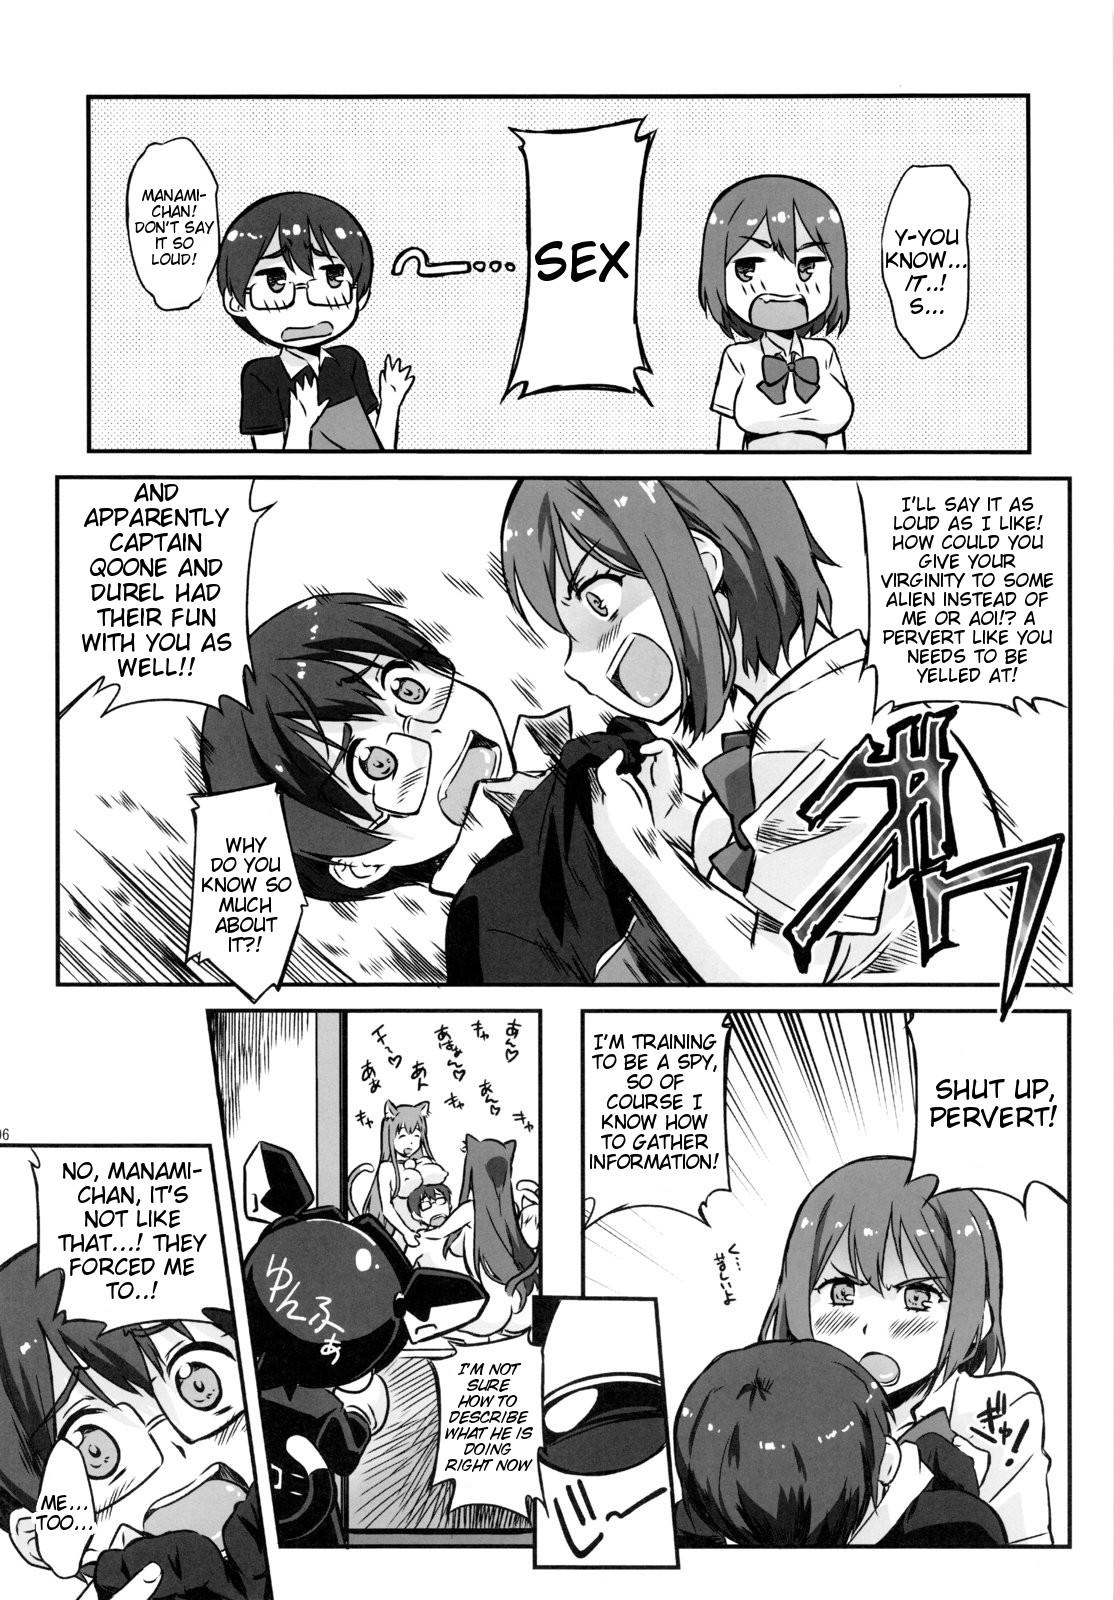 Girl Fuck Asoko de Ikuyo! 2 - Asobi ni iku yo Orgasmus - Page 5